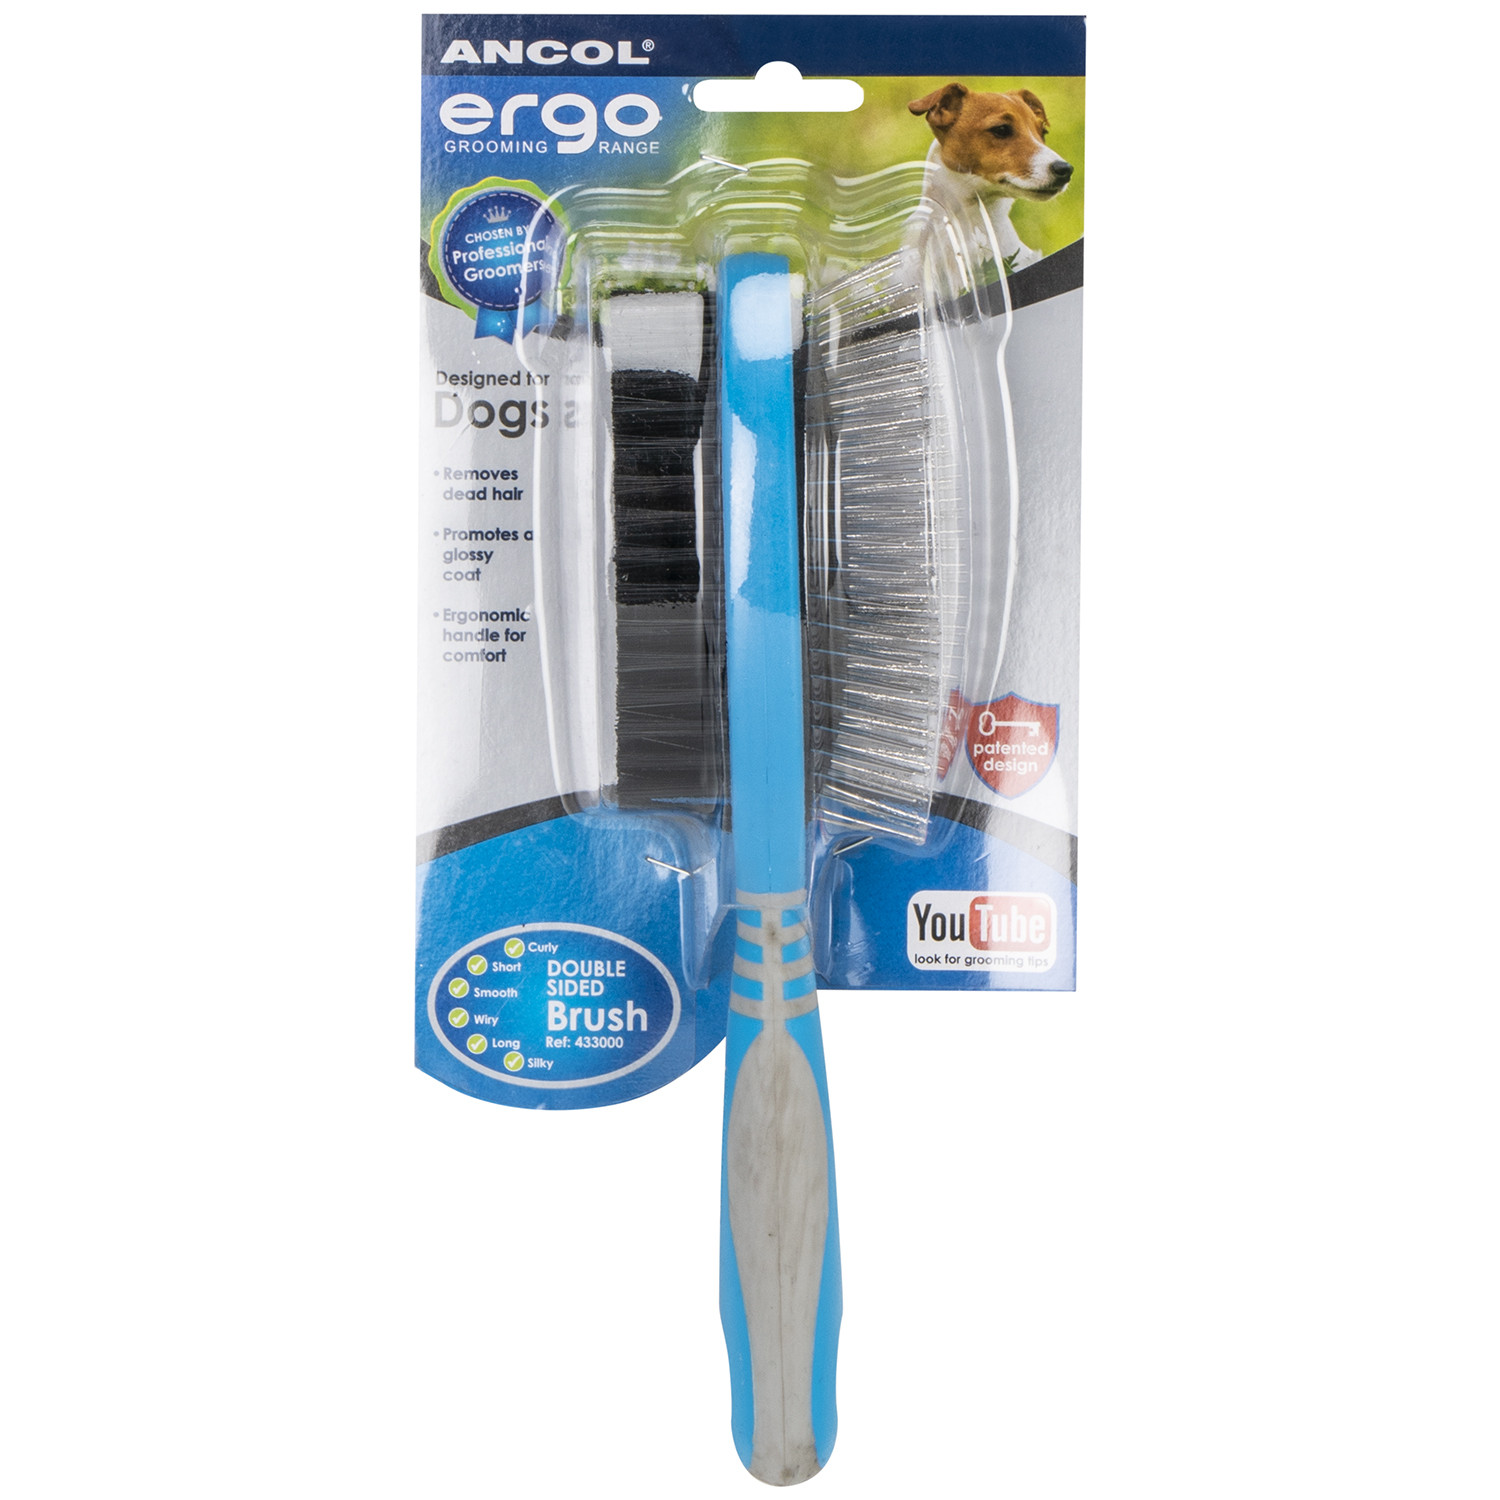 Ergo Double Sided Brush - Blue Image